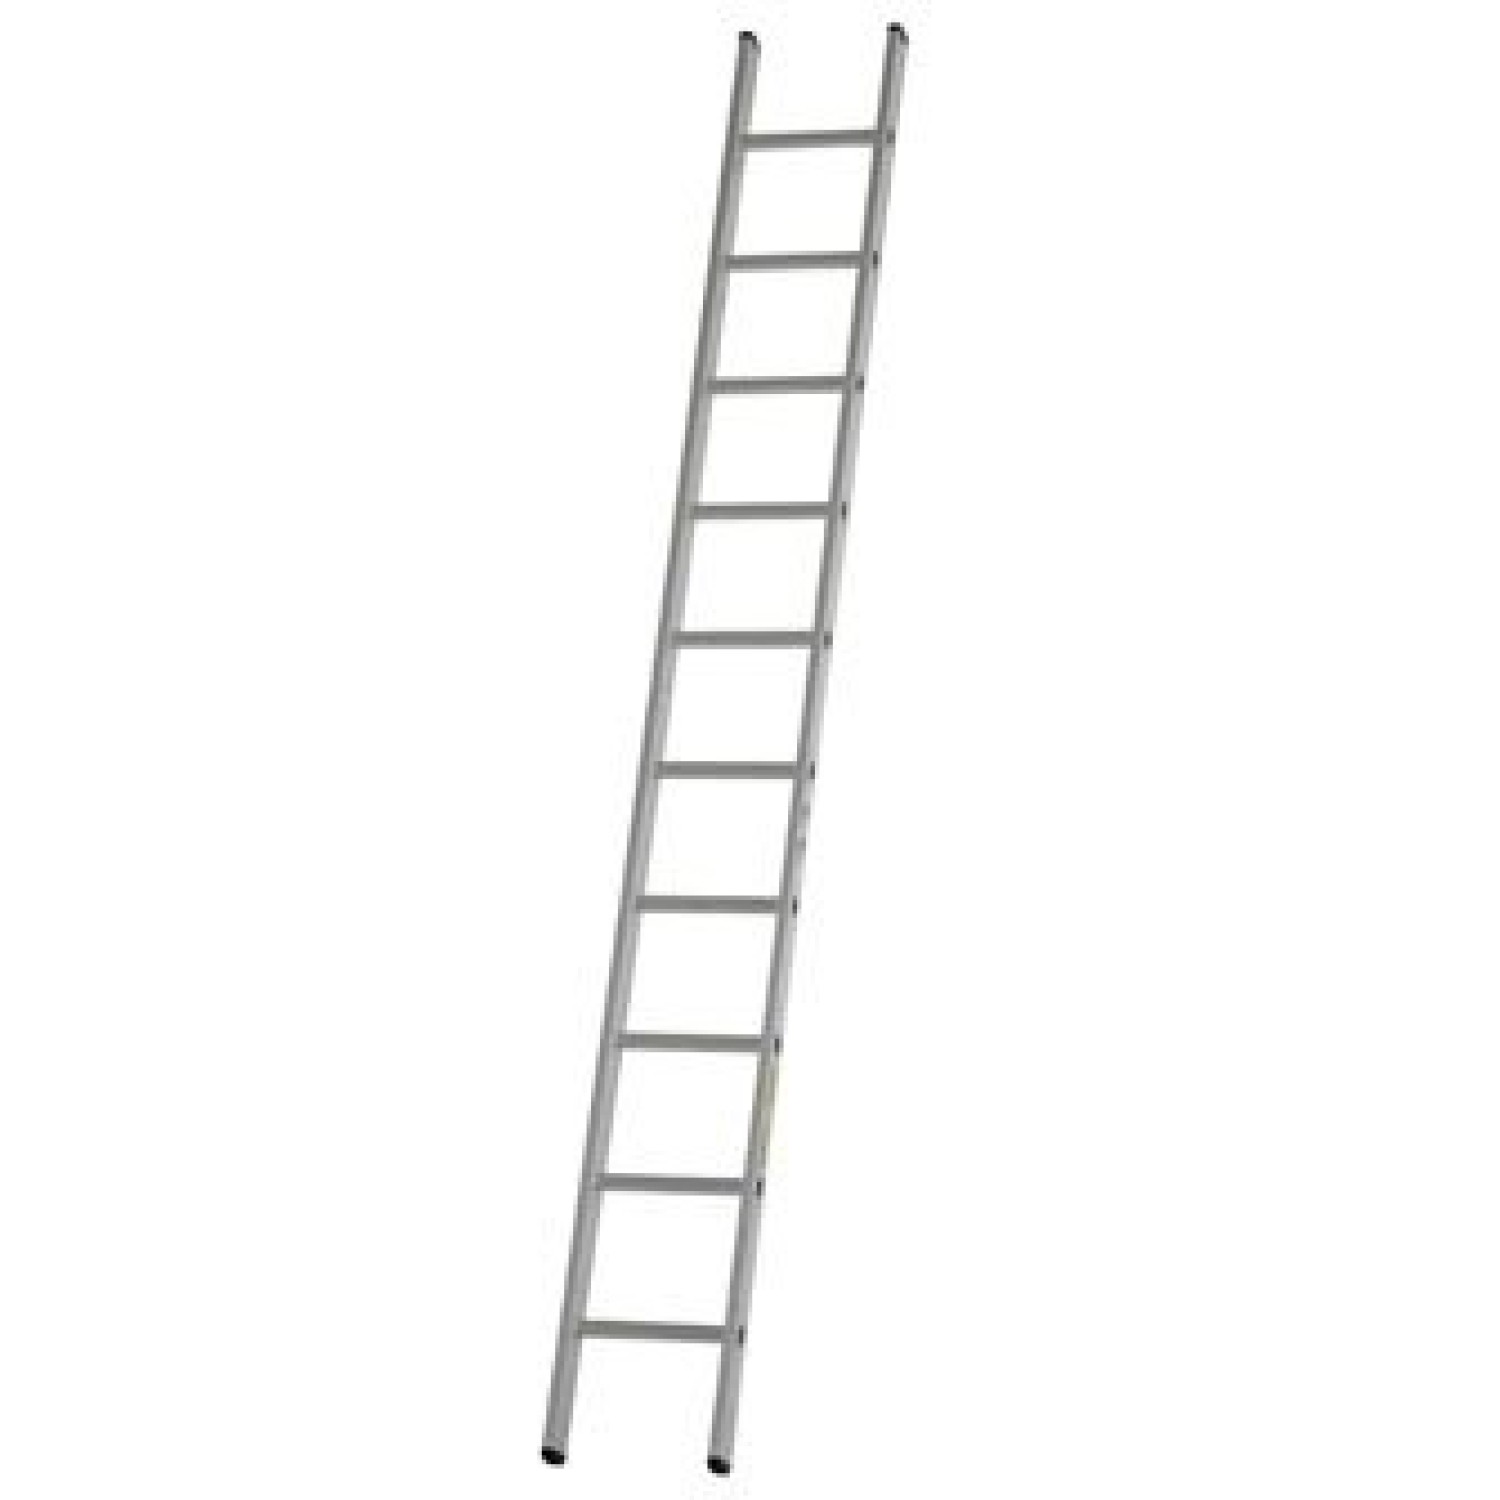 Dirks Enkele rechte ladder 3.6 meter gecoat